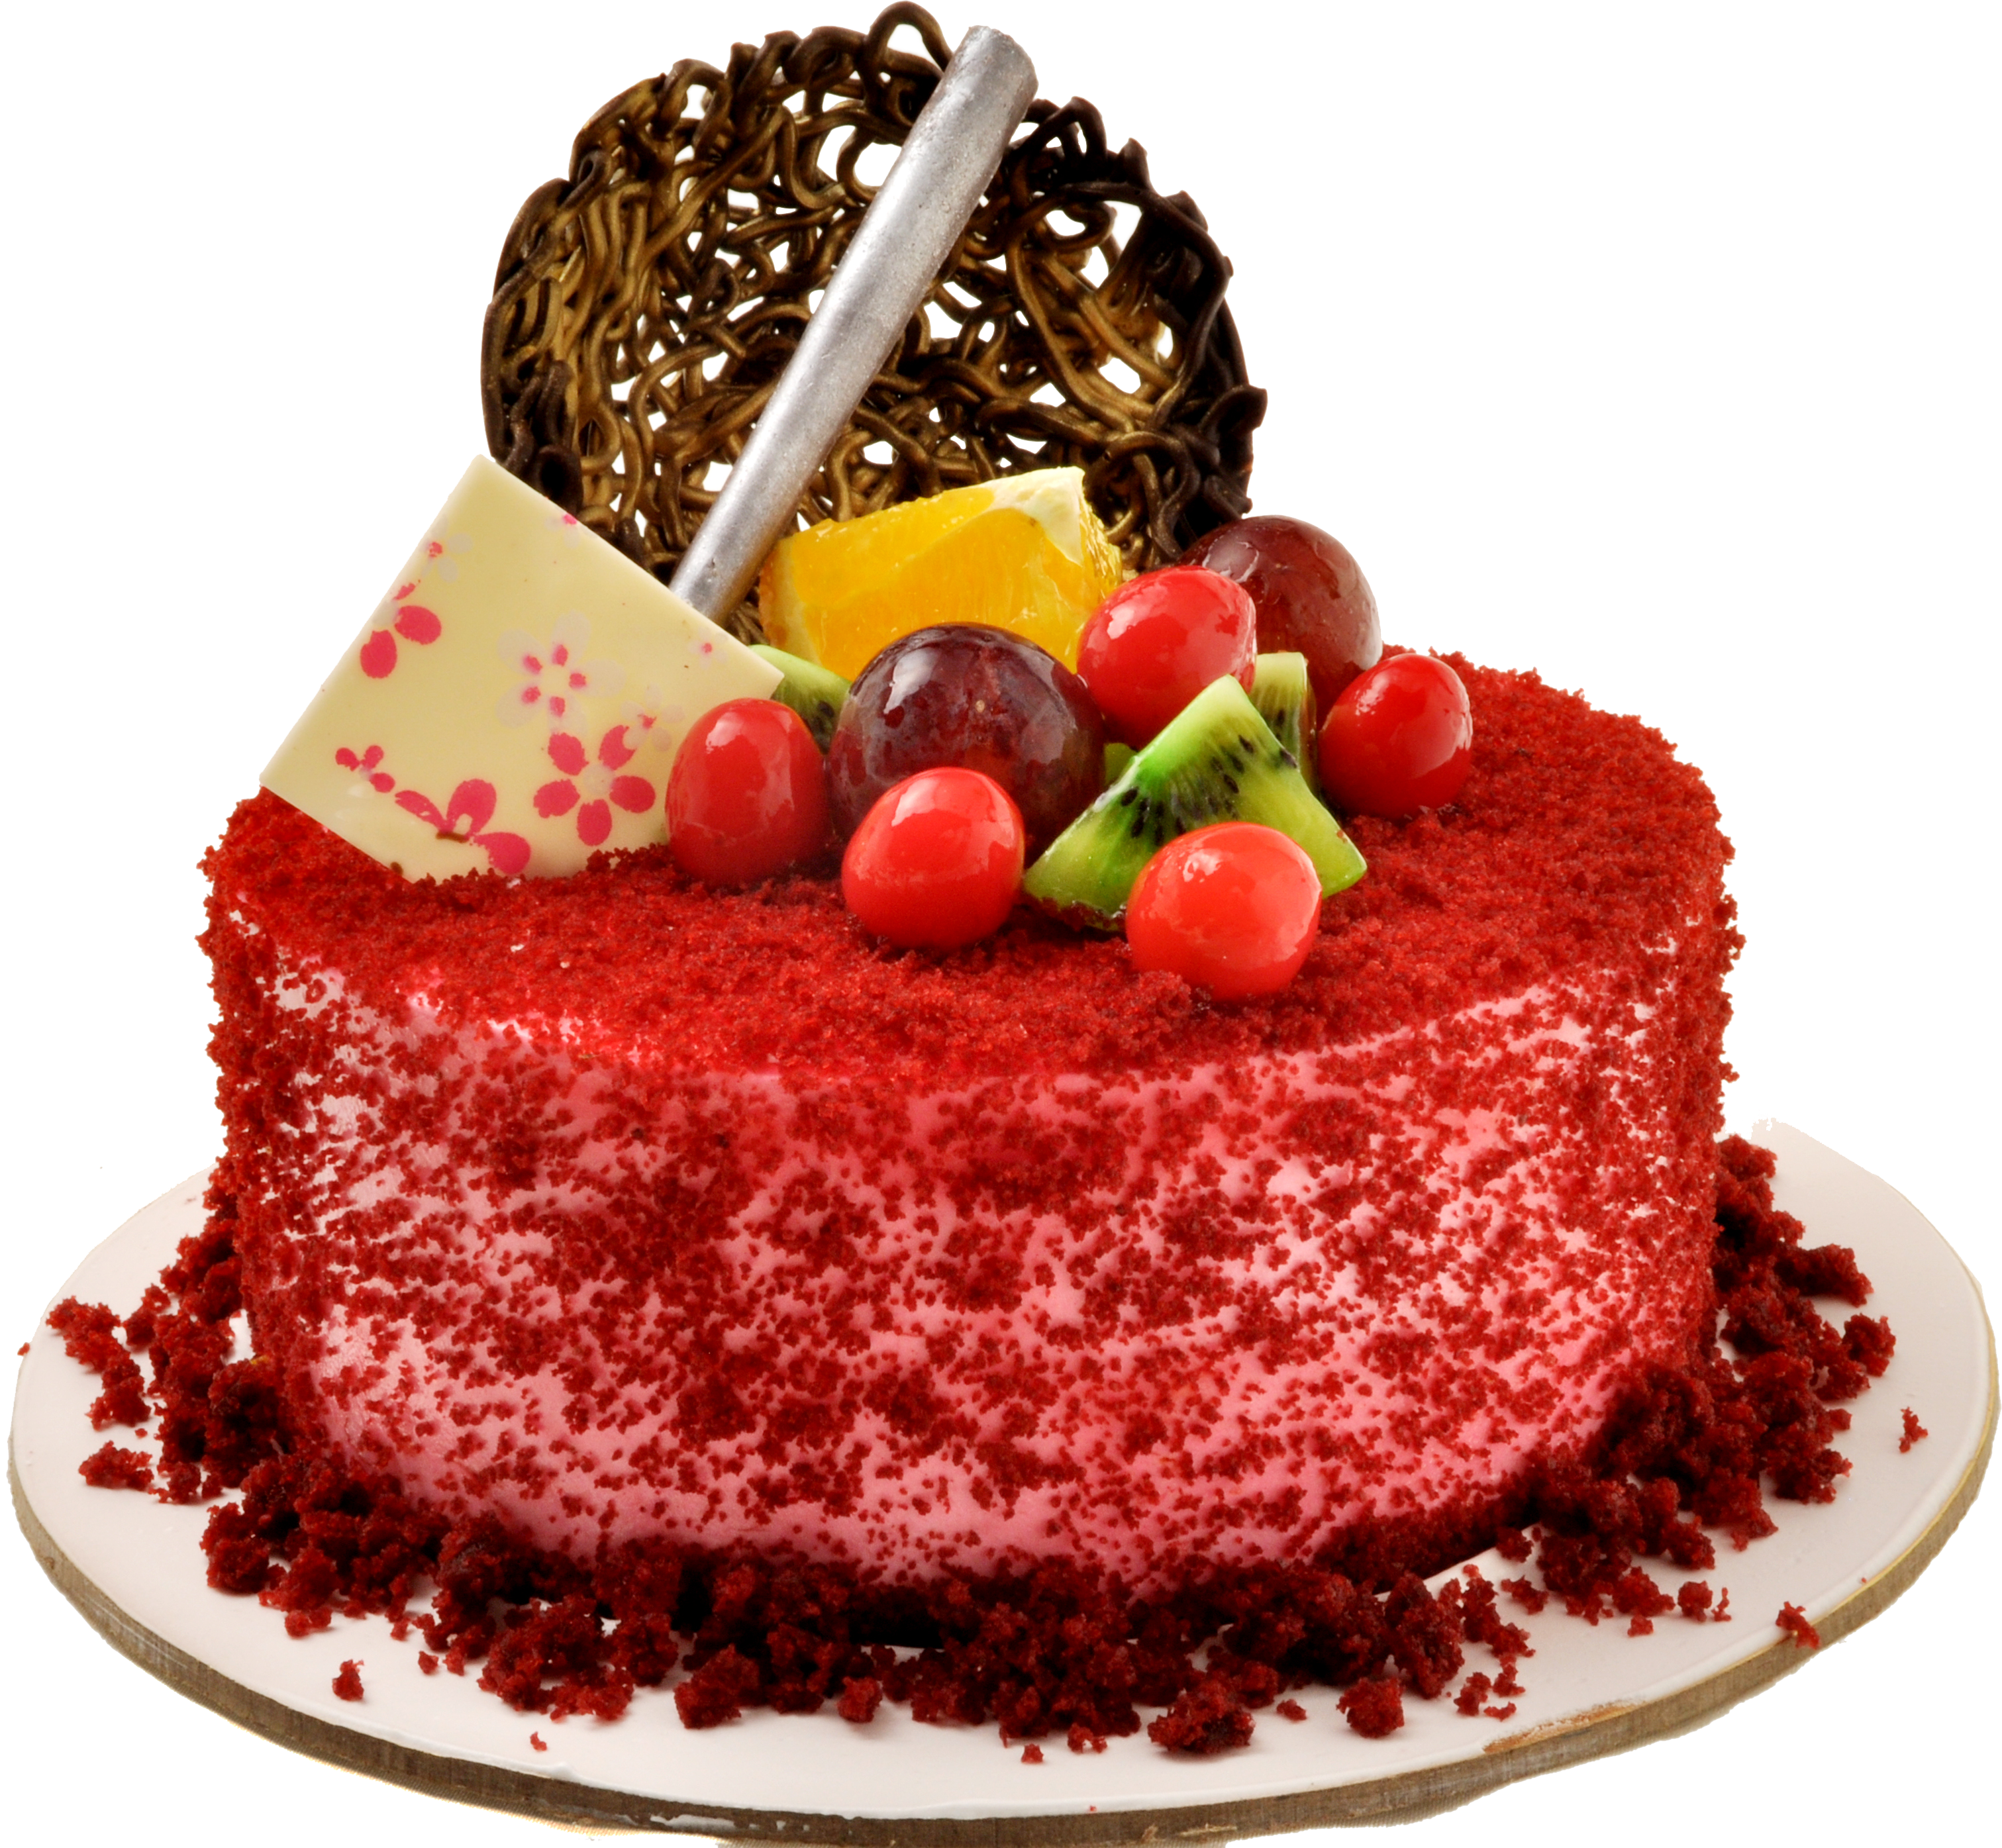 Classic Red Velvet Cake Recipe by Tasty